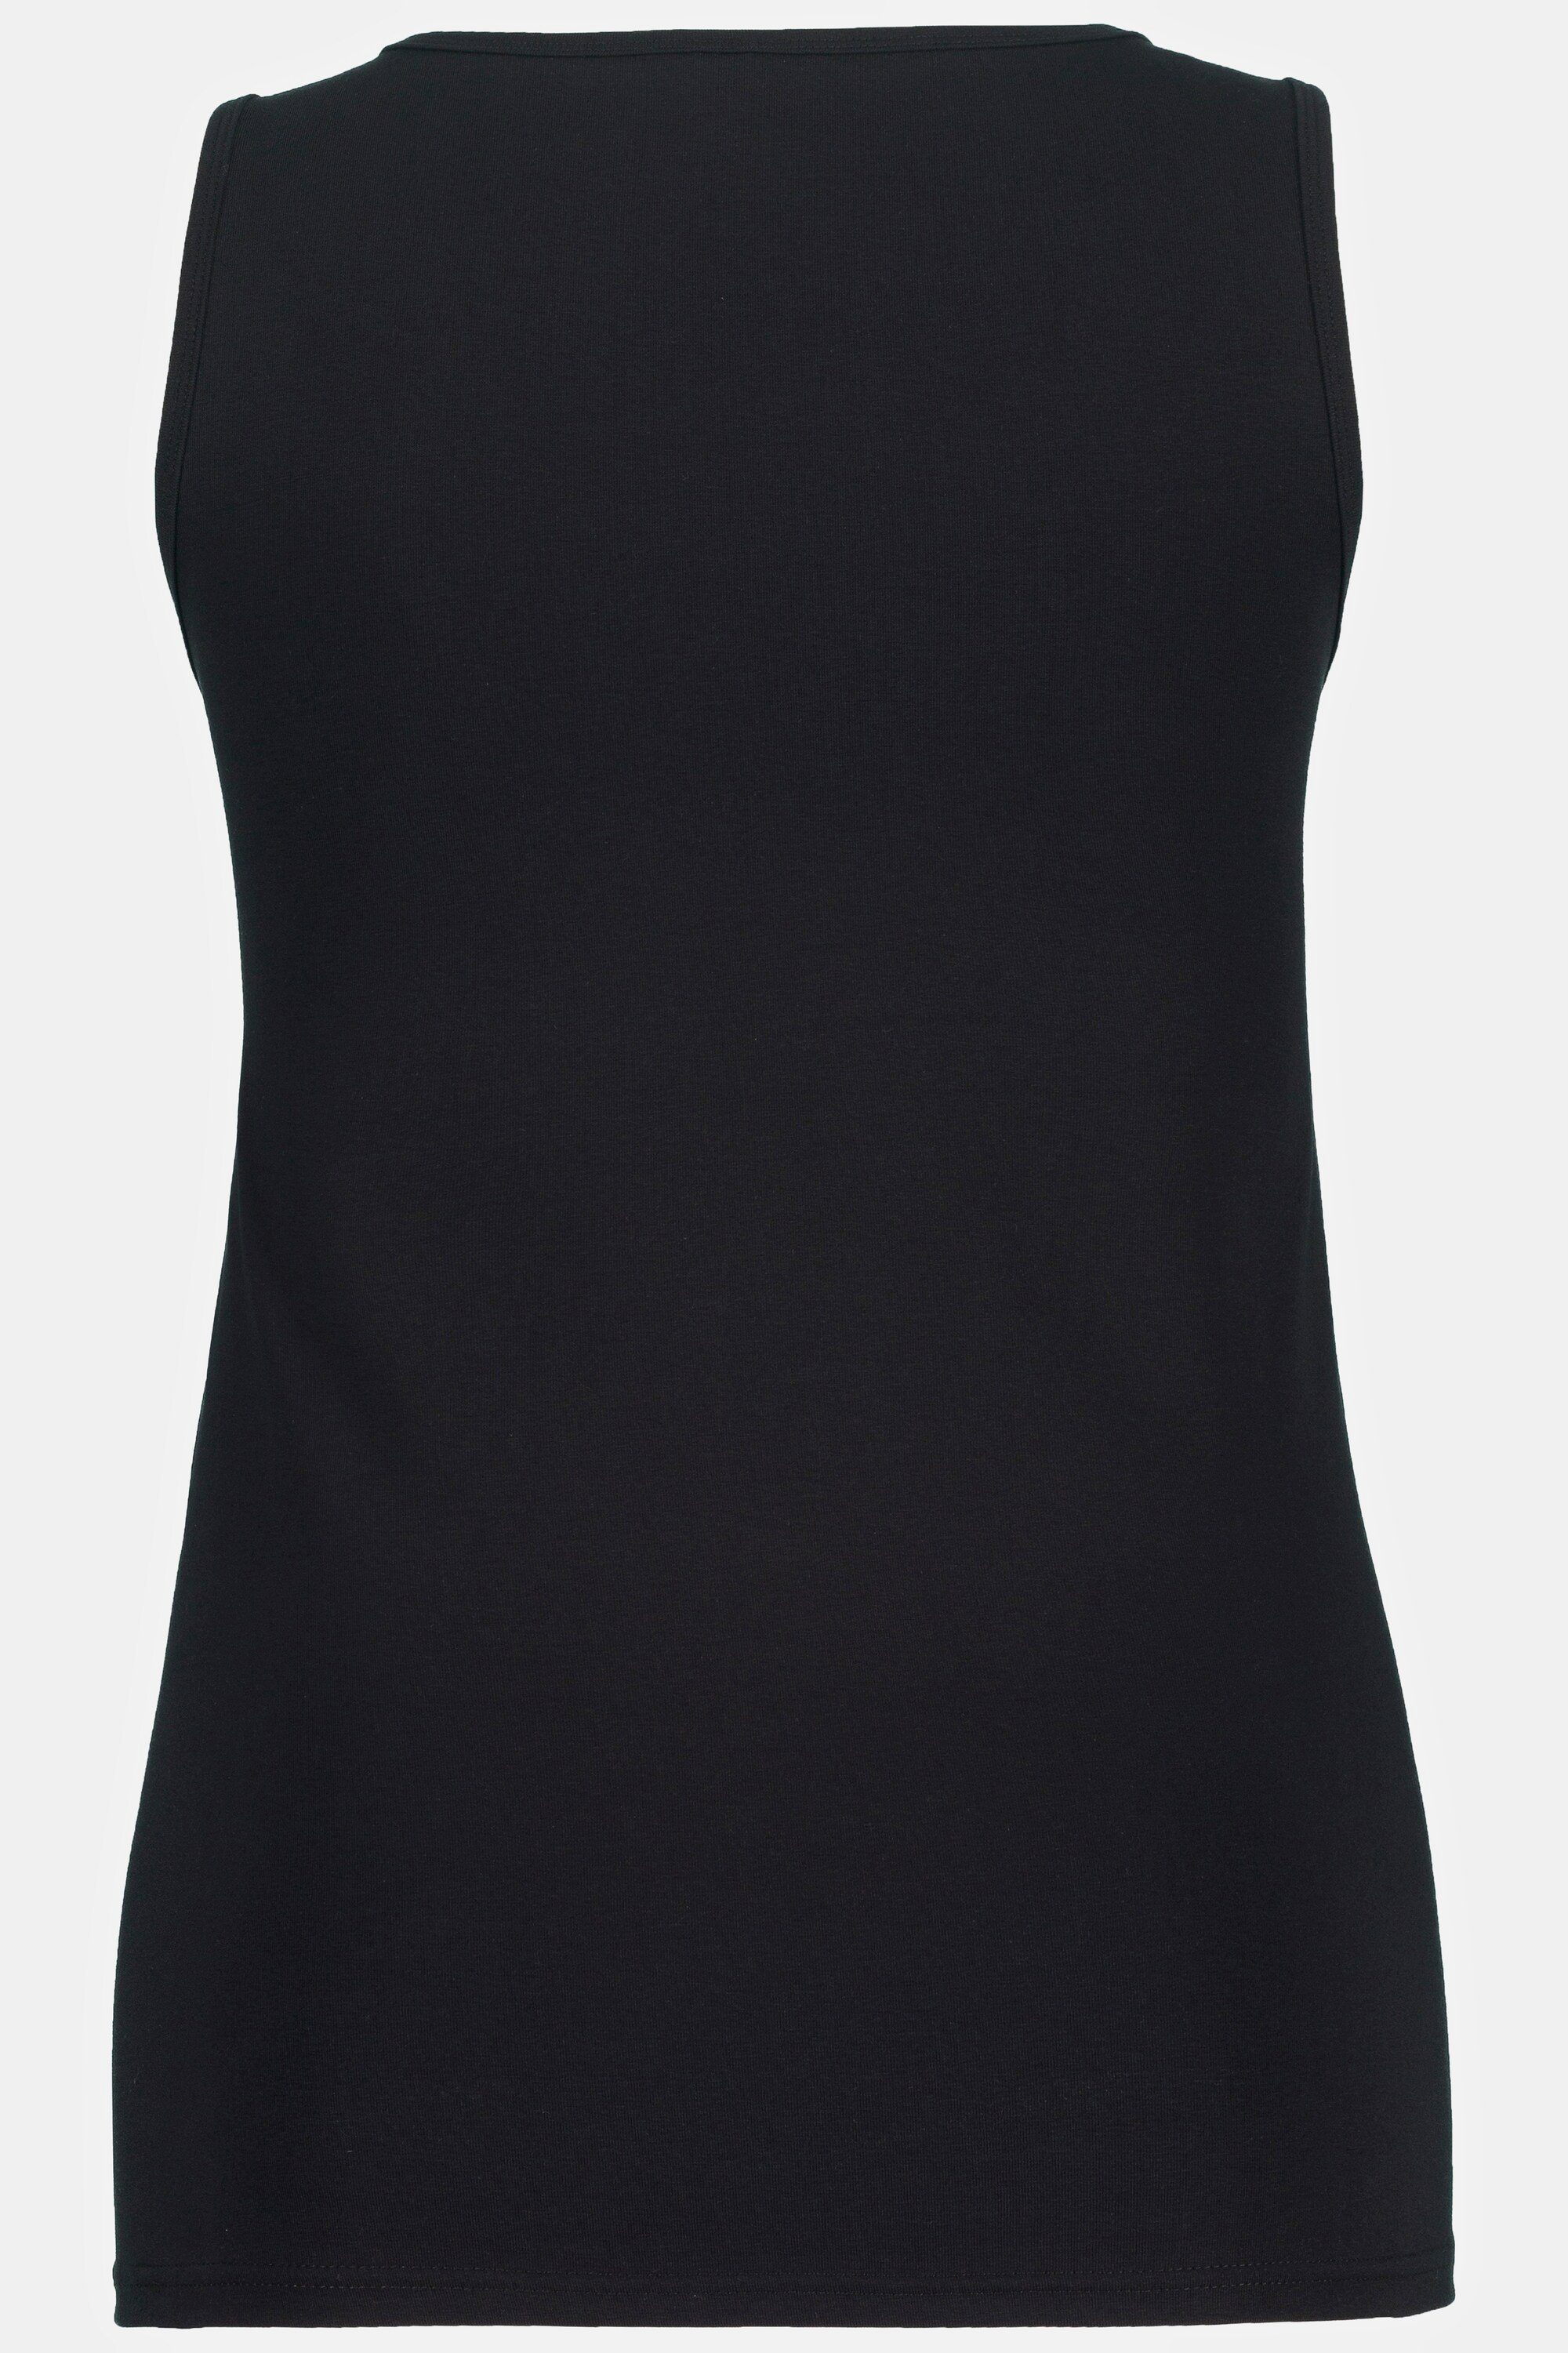 Unterhemd Ulla Bodyforming-Unterhemd breite Popken schwarz Träger Rundhals